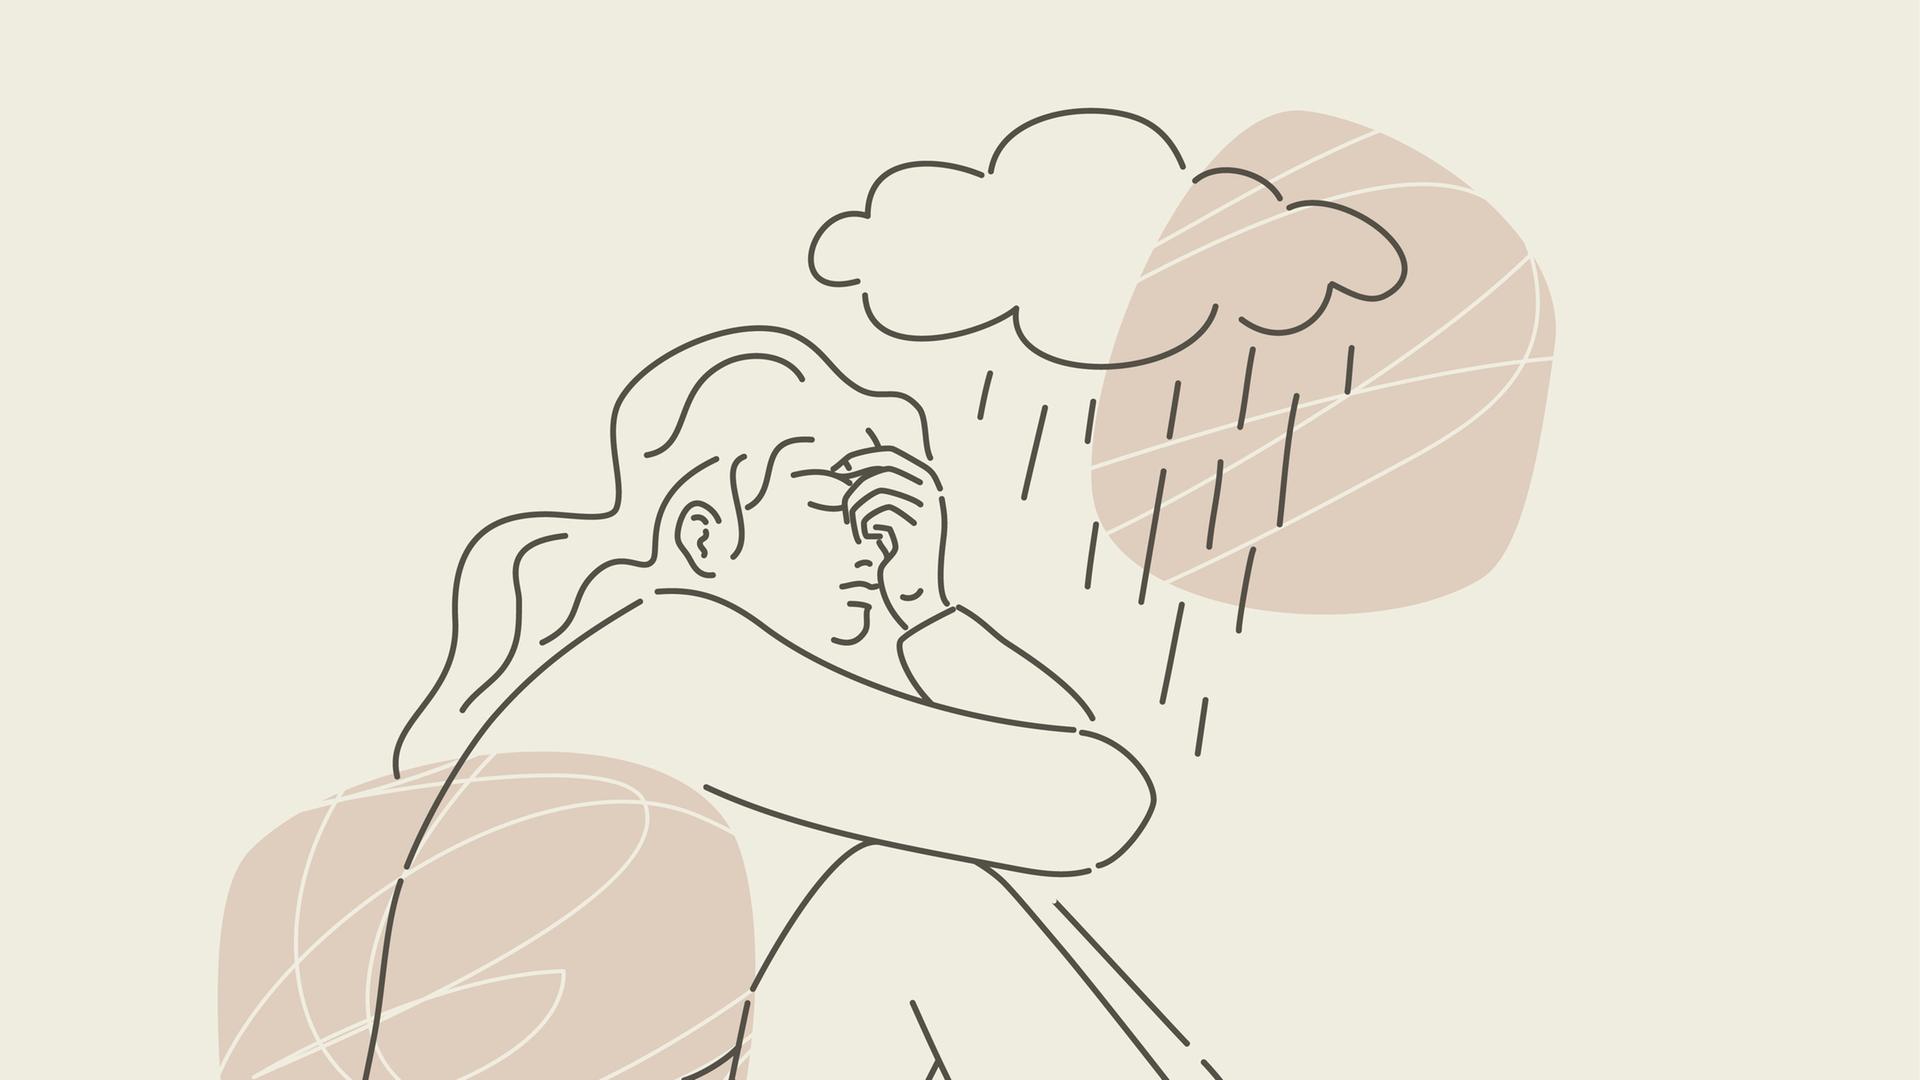 Die Illustration zeigt eine Person, die unter einer Regenwolke ein missmutiges und sorgenvolles Gesicht macht.